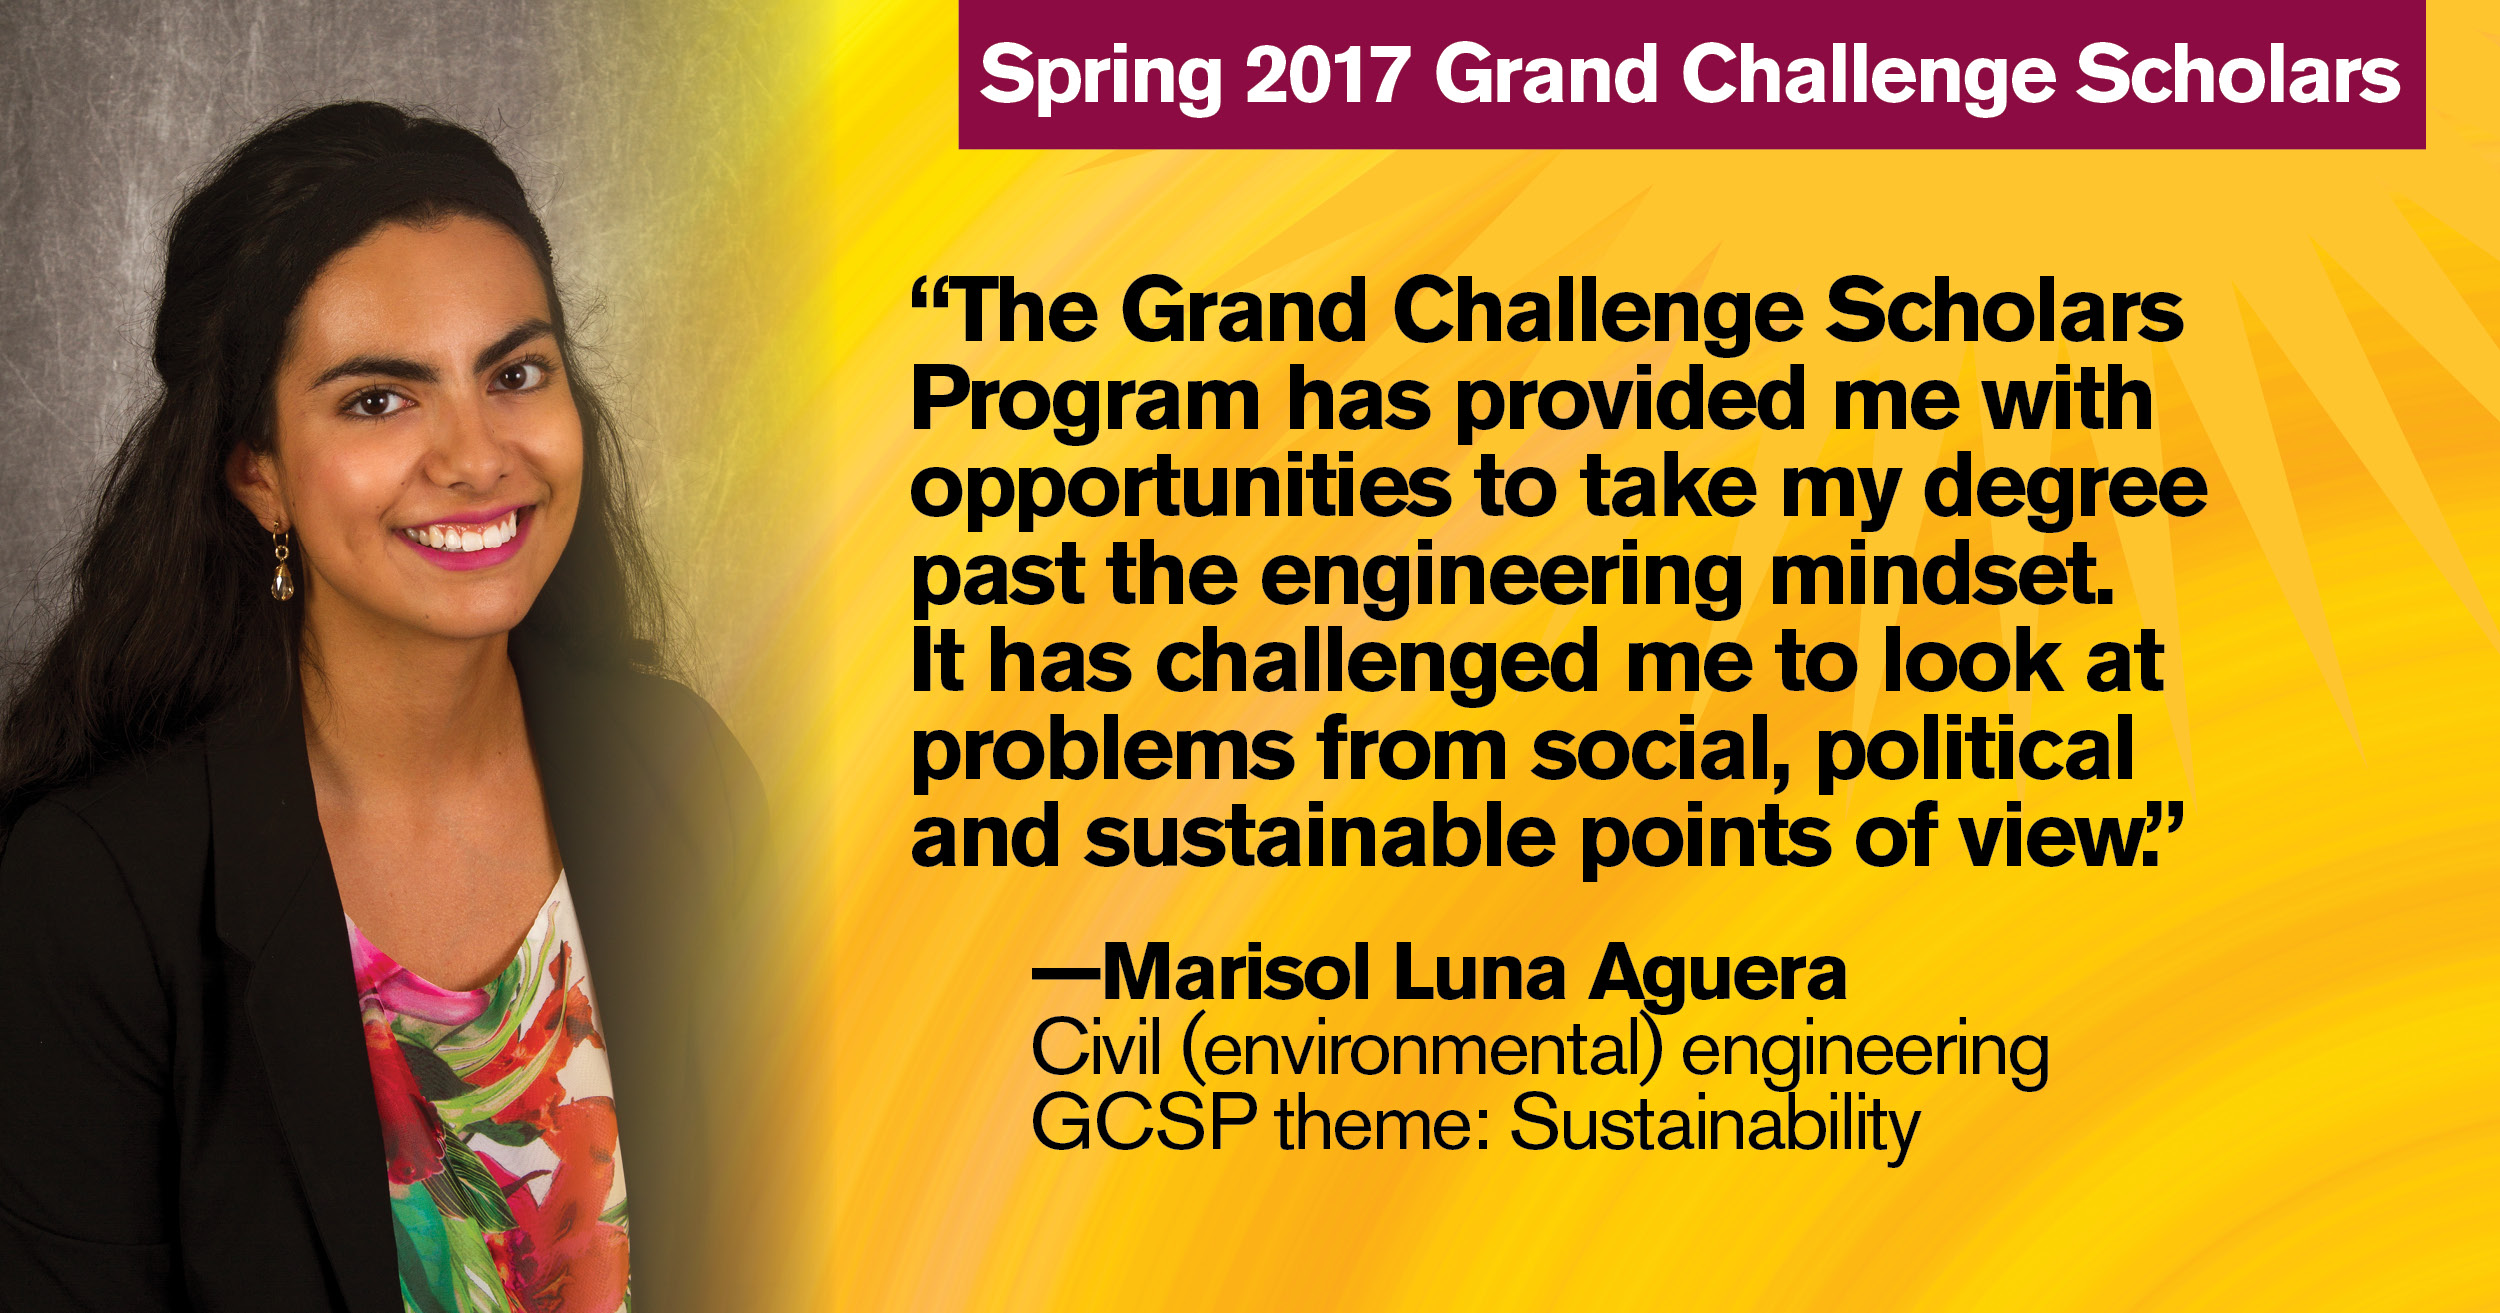 Spring 2017 Grand Challenge Scholar Marisol Luna Aguera